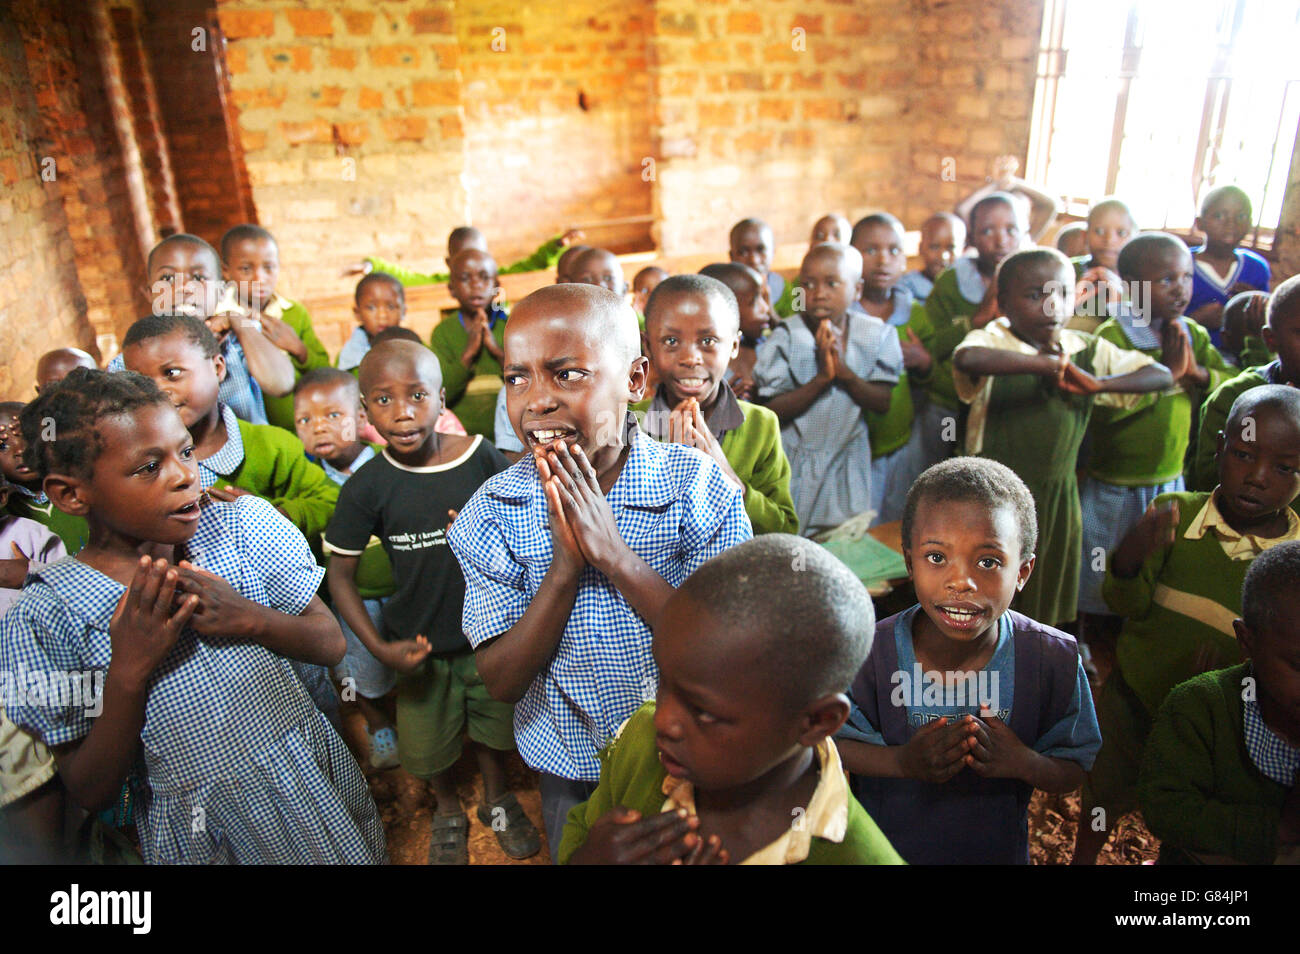 Groupe d'enfants de l'école de l'Ouganda dans une école africaine rurale se rassemblent pour un matin, s'attaque à la hâte et ciblé Banque D'Images